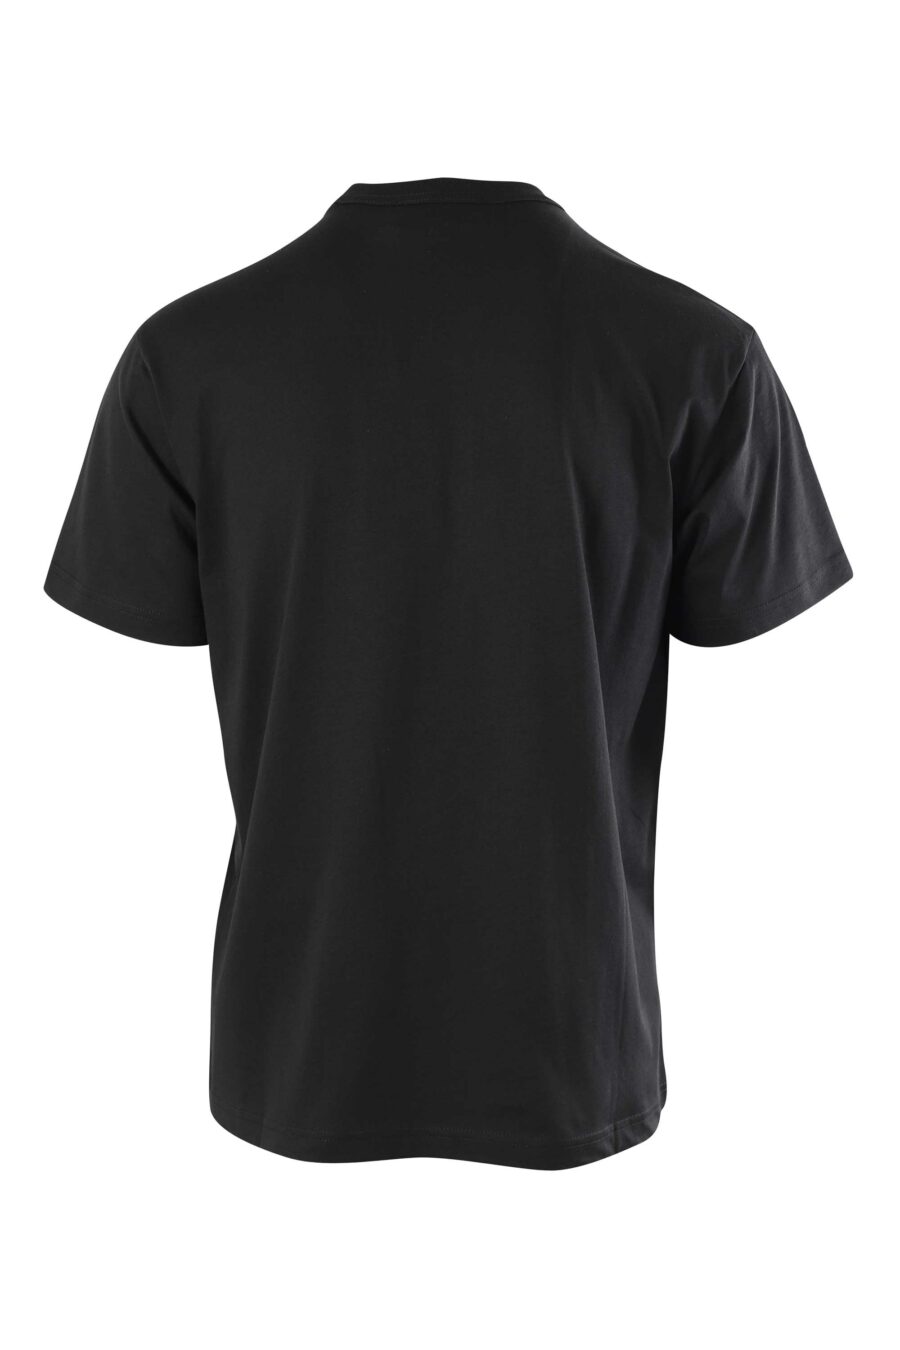 Camiseta negra con maxilogo centrado - 8052019318753 2